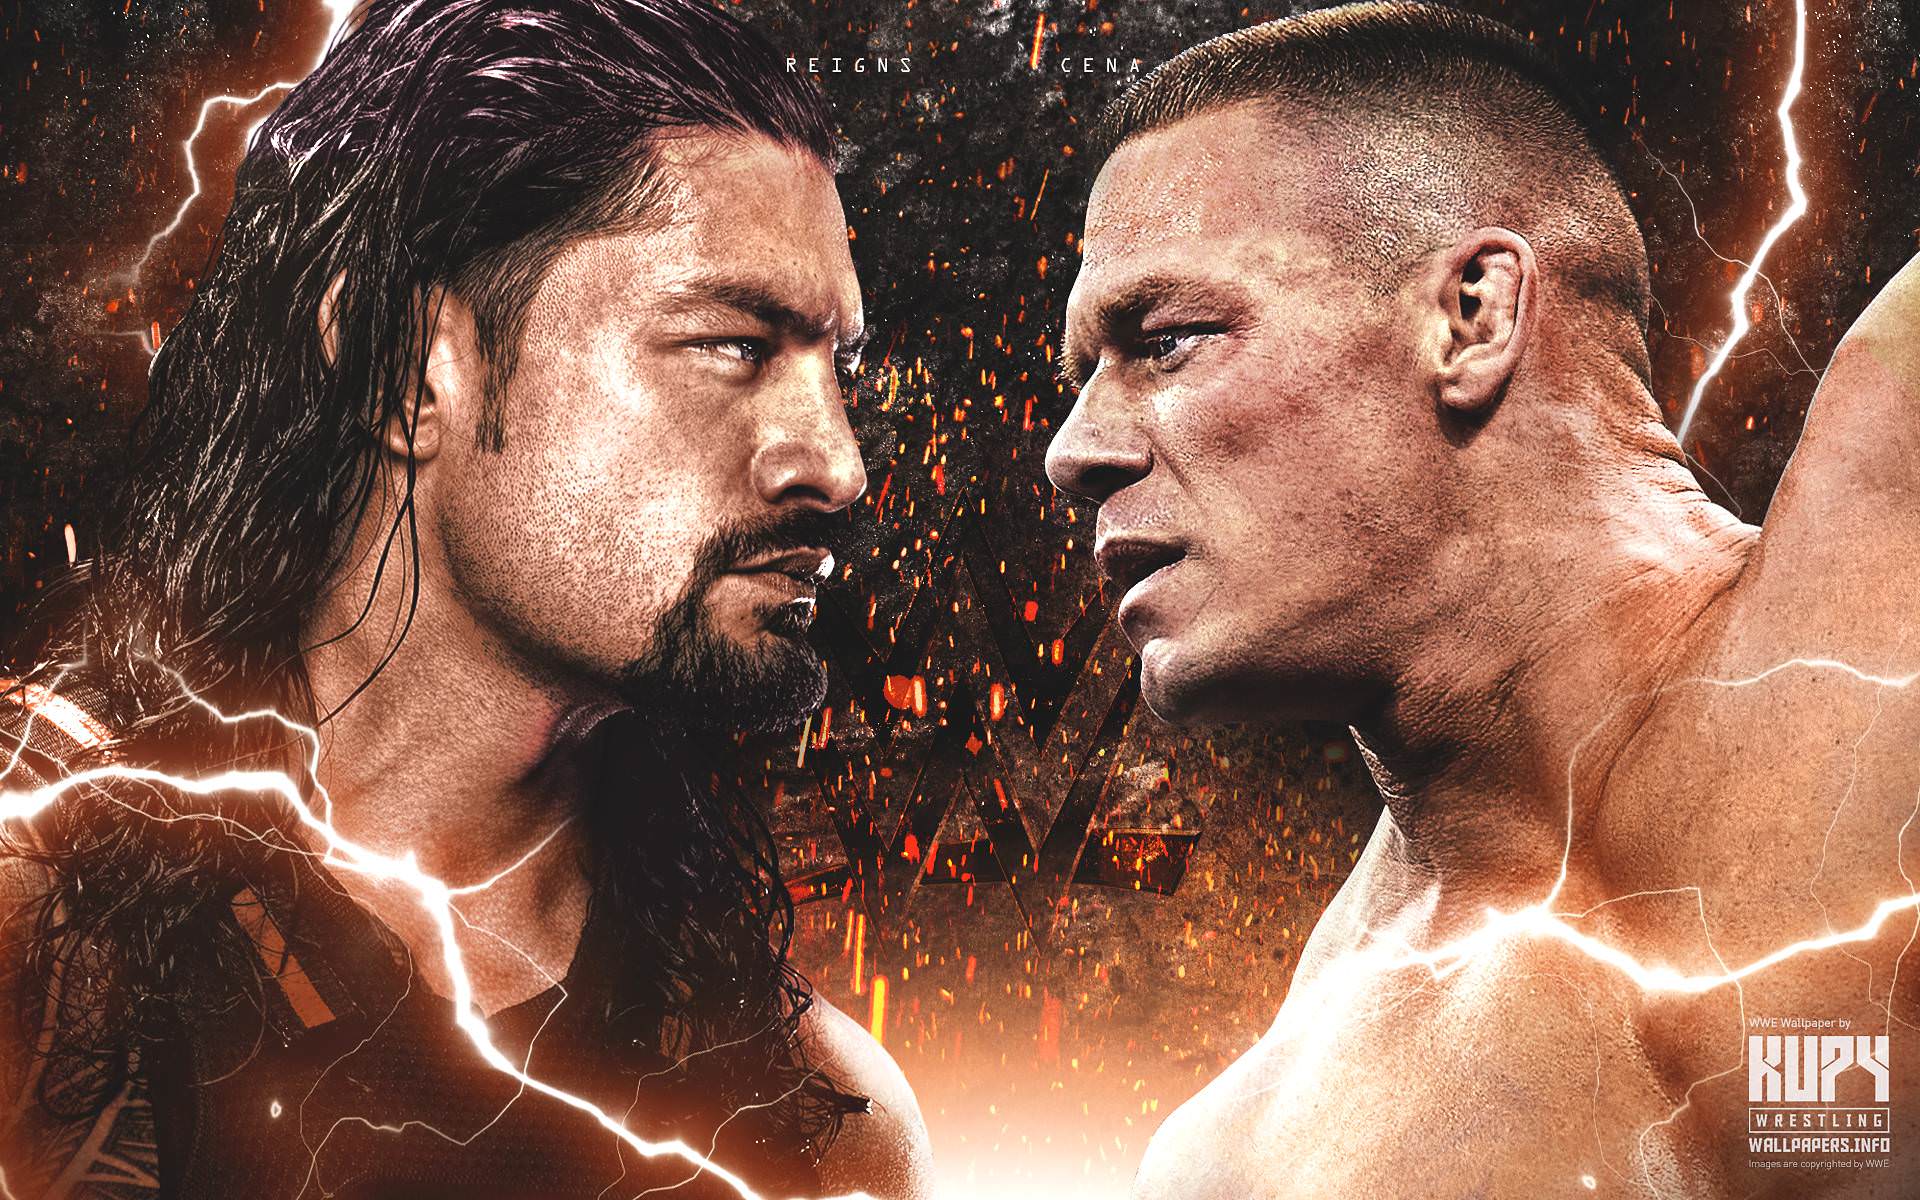 NEW Roman Reigns vs. John Cena wallpaper! Wrestling